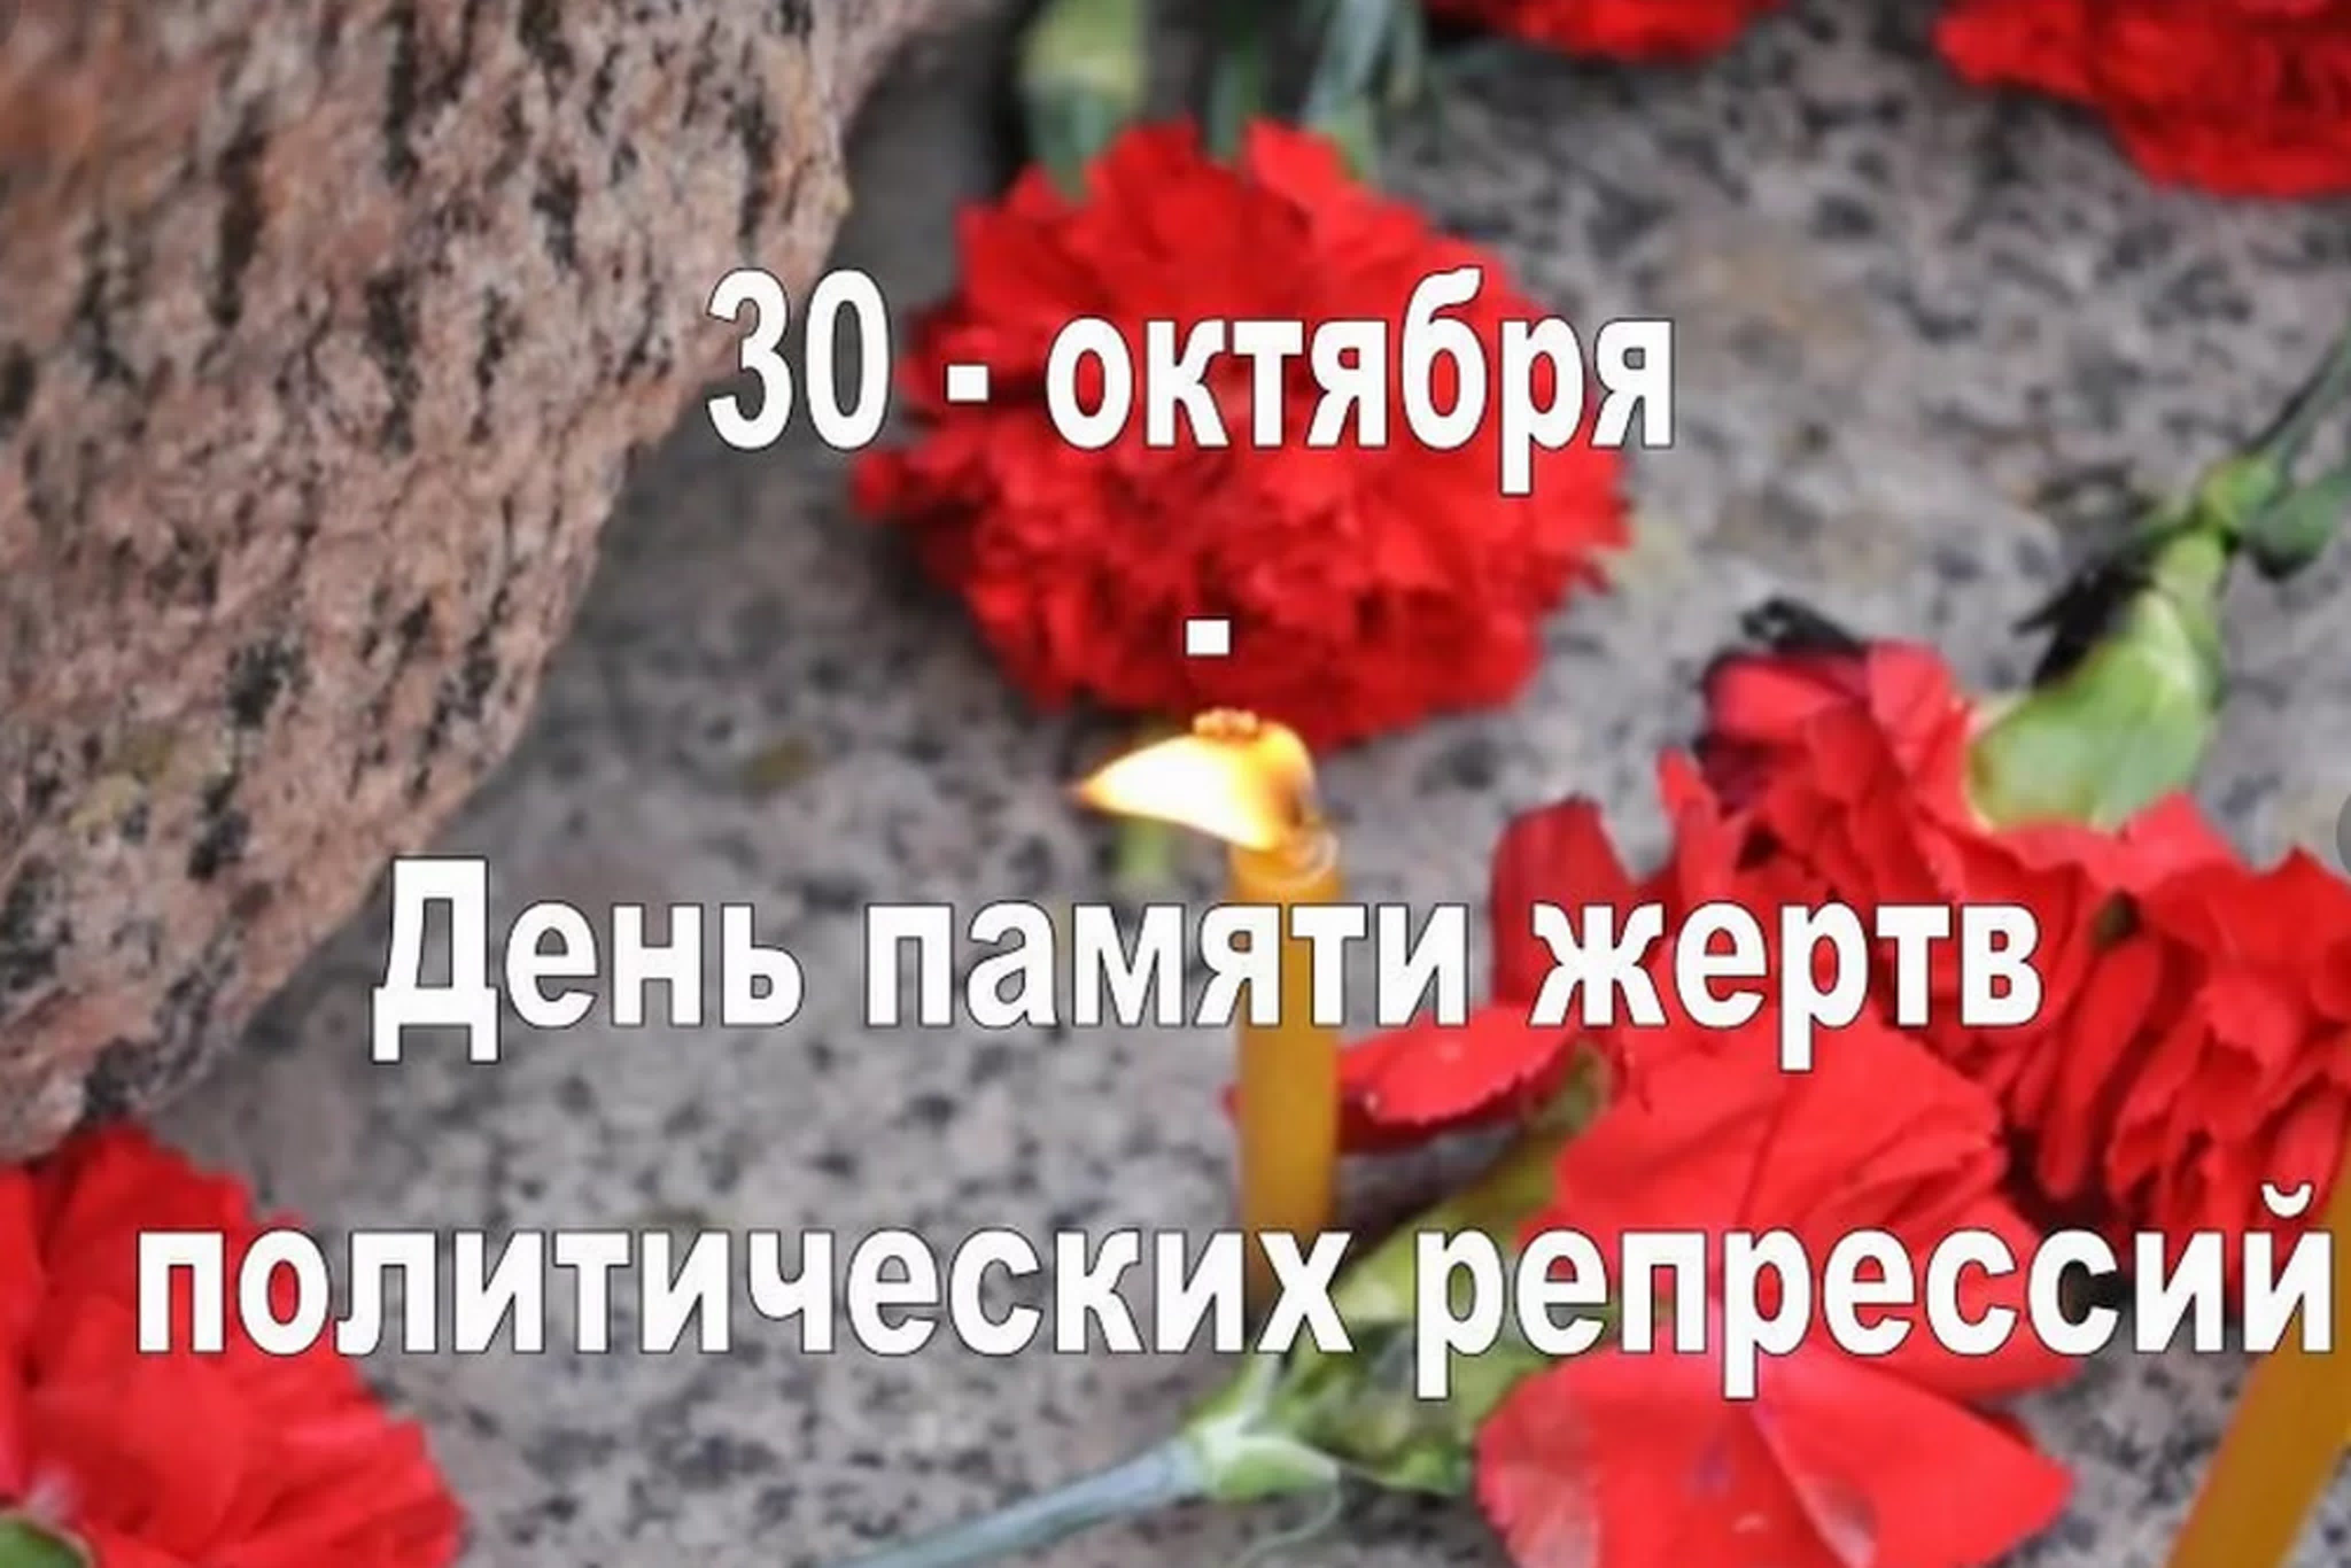 Как называется день памяти. День памяти жертв политических репрессий. 30 Октября день памяти жертв политических репрессий в России. 30 Октябярдень памяти жертв политических репрессий. 30 Октября день памяти.